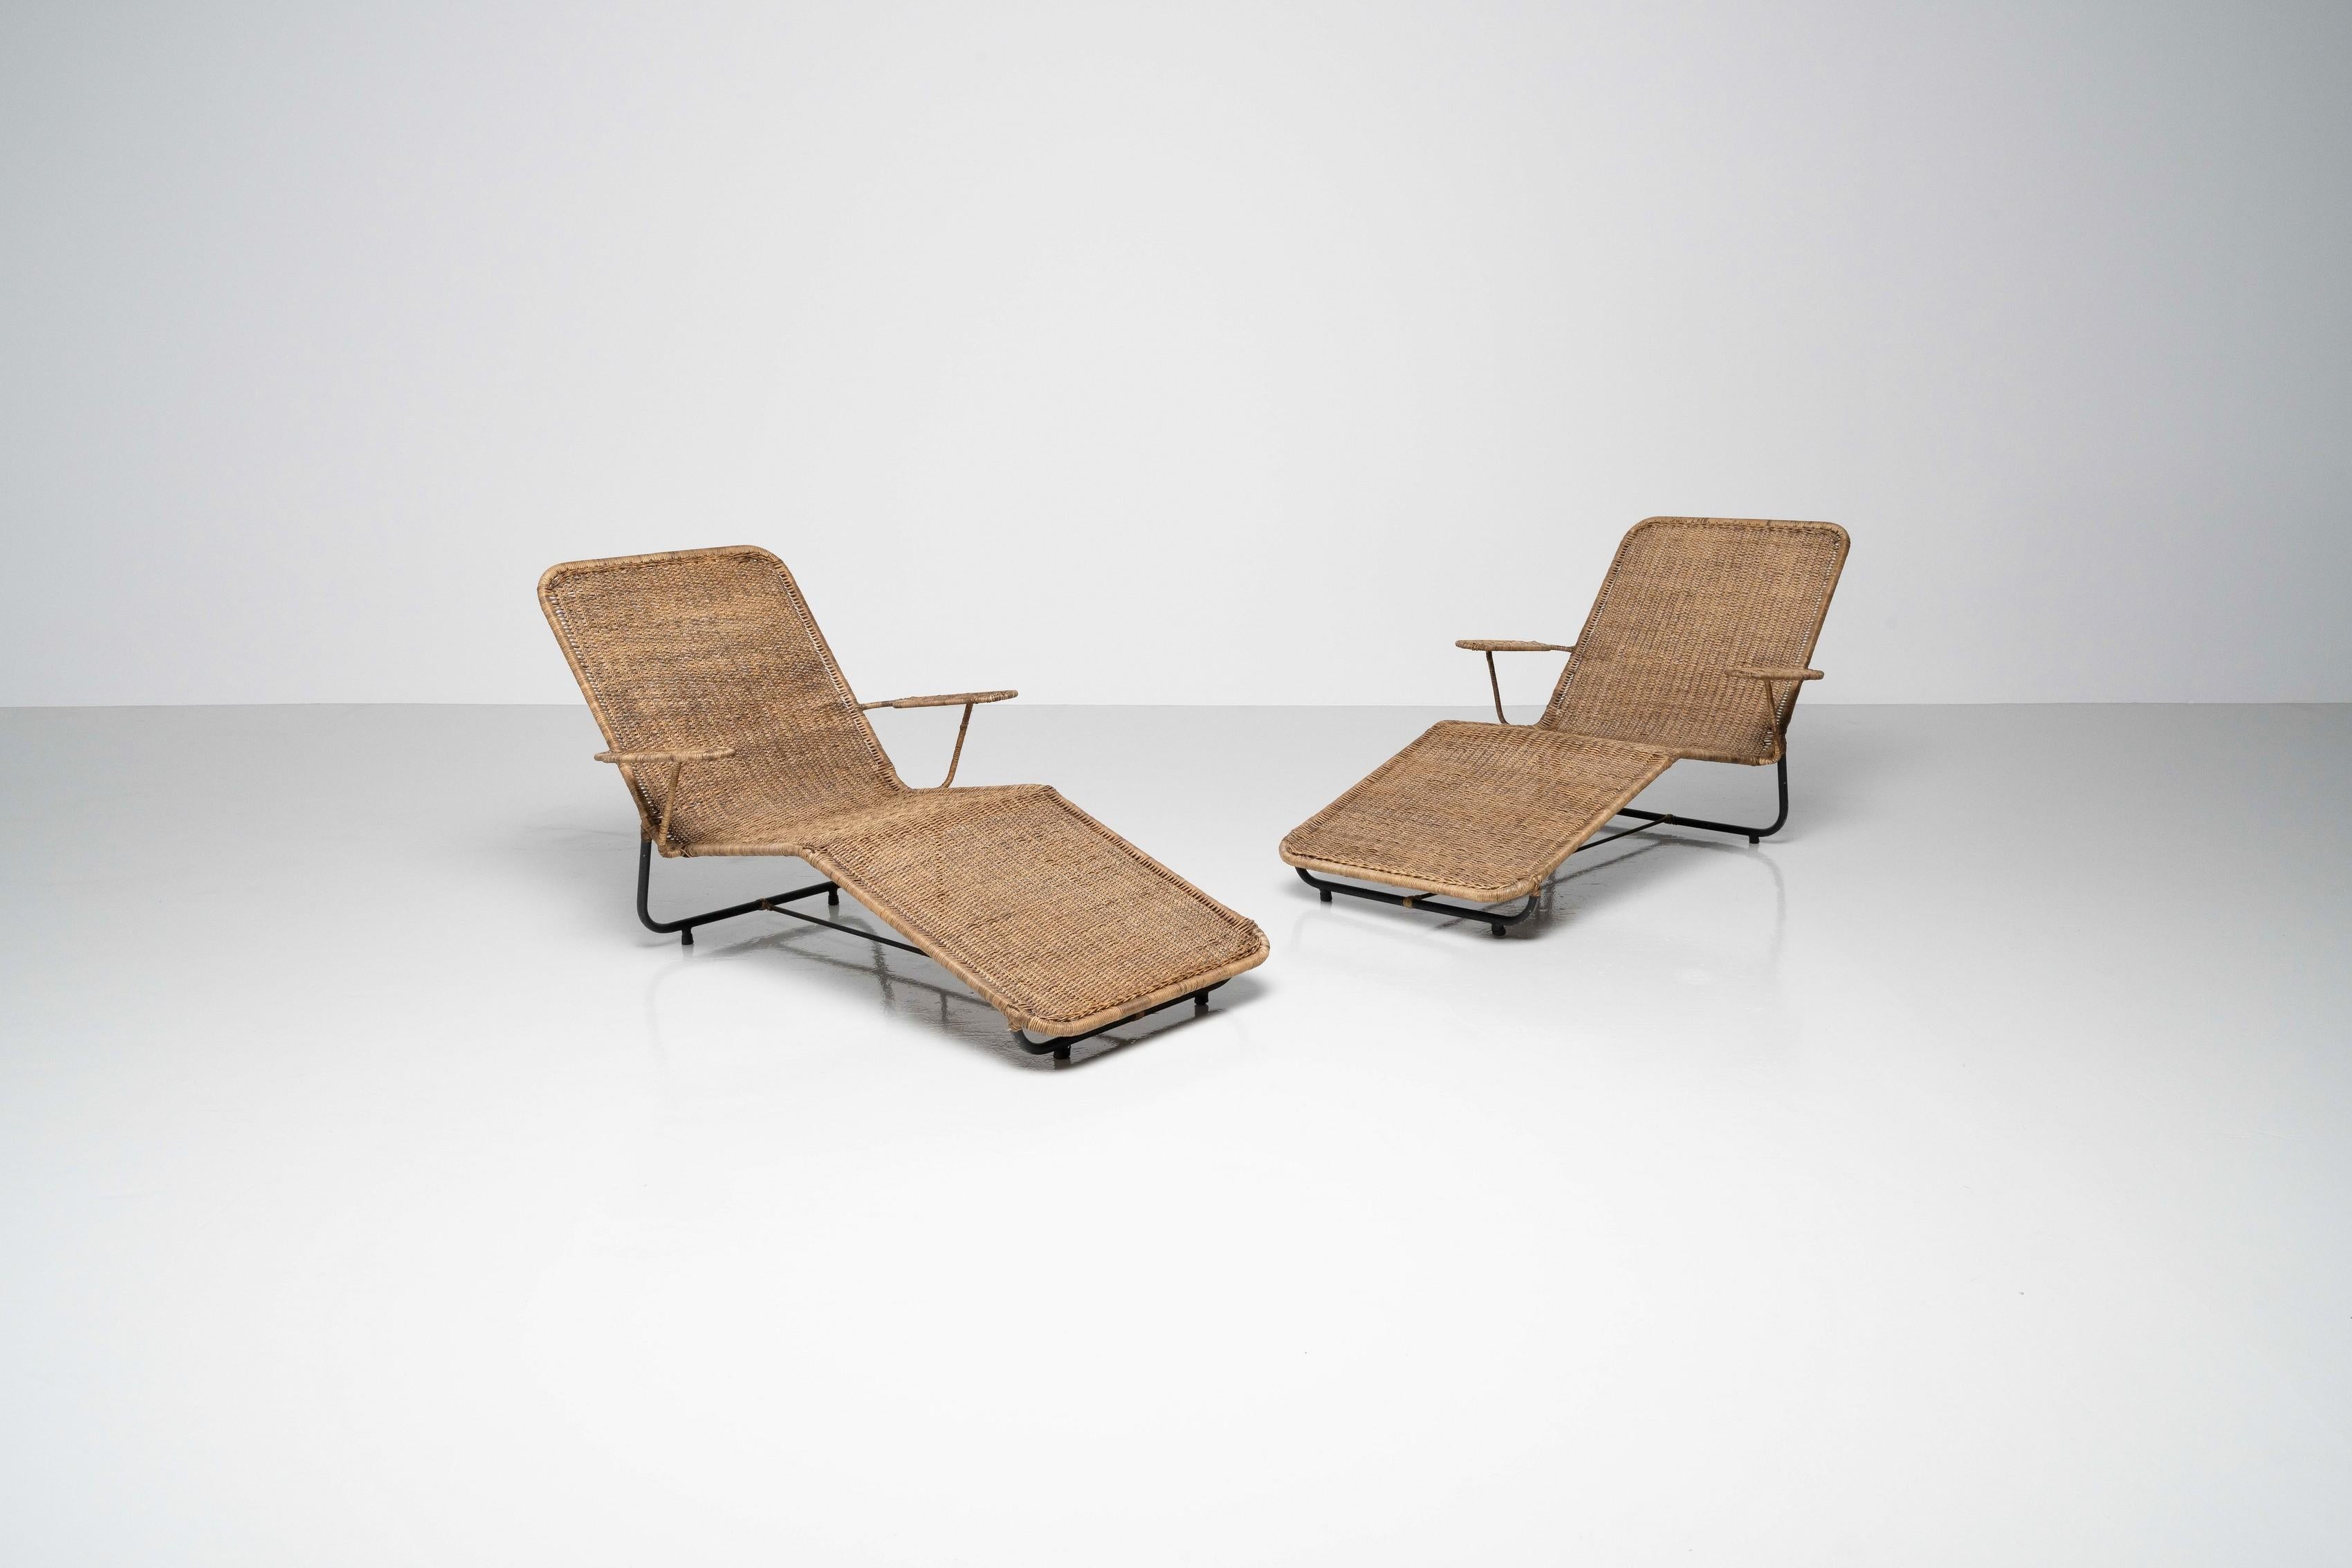 Une belle paire de chaises longues en rotin de Carlo Hauner et Martin Eisler, fabriquées par Forma Móveis au Brésil en 1955. Les chaises sont en parfait état d'origine et n'ont jamais été séparées. La patine générale est fantastique, et les chaises